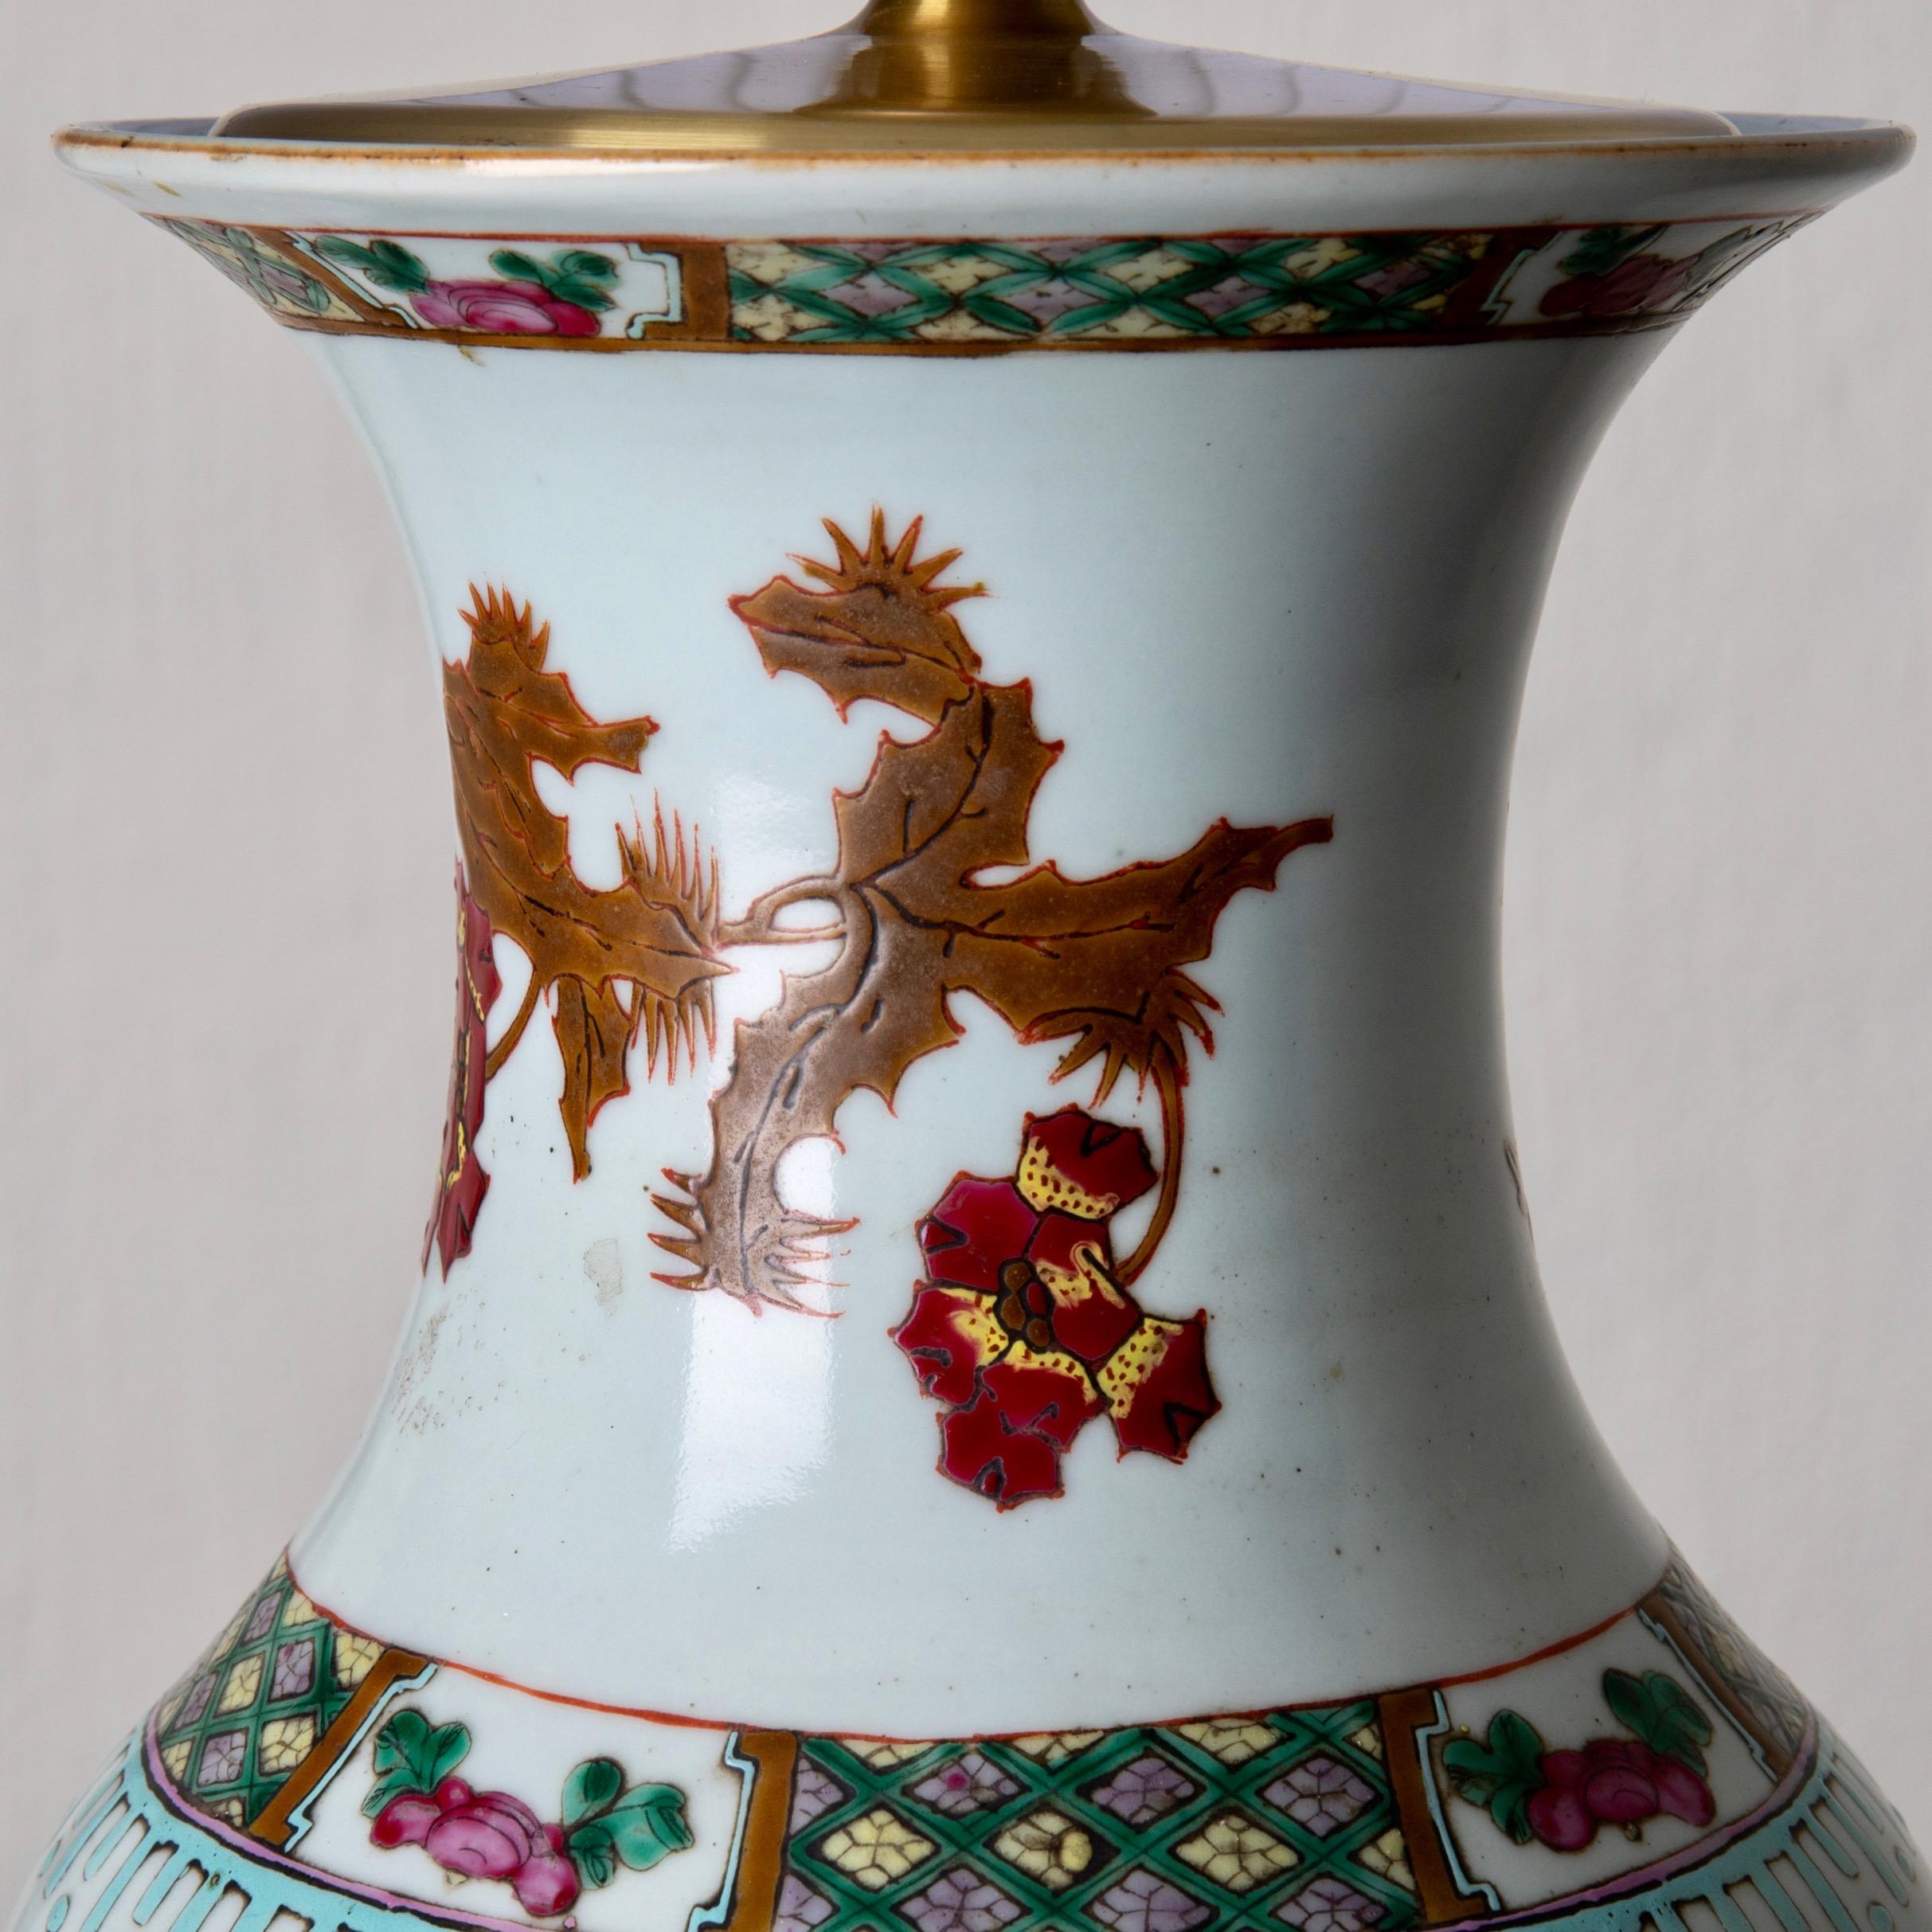 Lampentisch orientalisch weiß rote Blumen 1920er Jahre, China. Eine Tischlampe aus weißem Porzellan mit rotem Blumenmuster. Maße: H mit Schirm 29